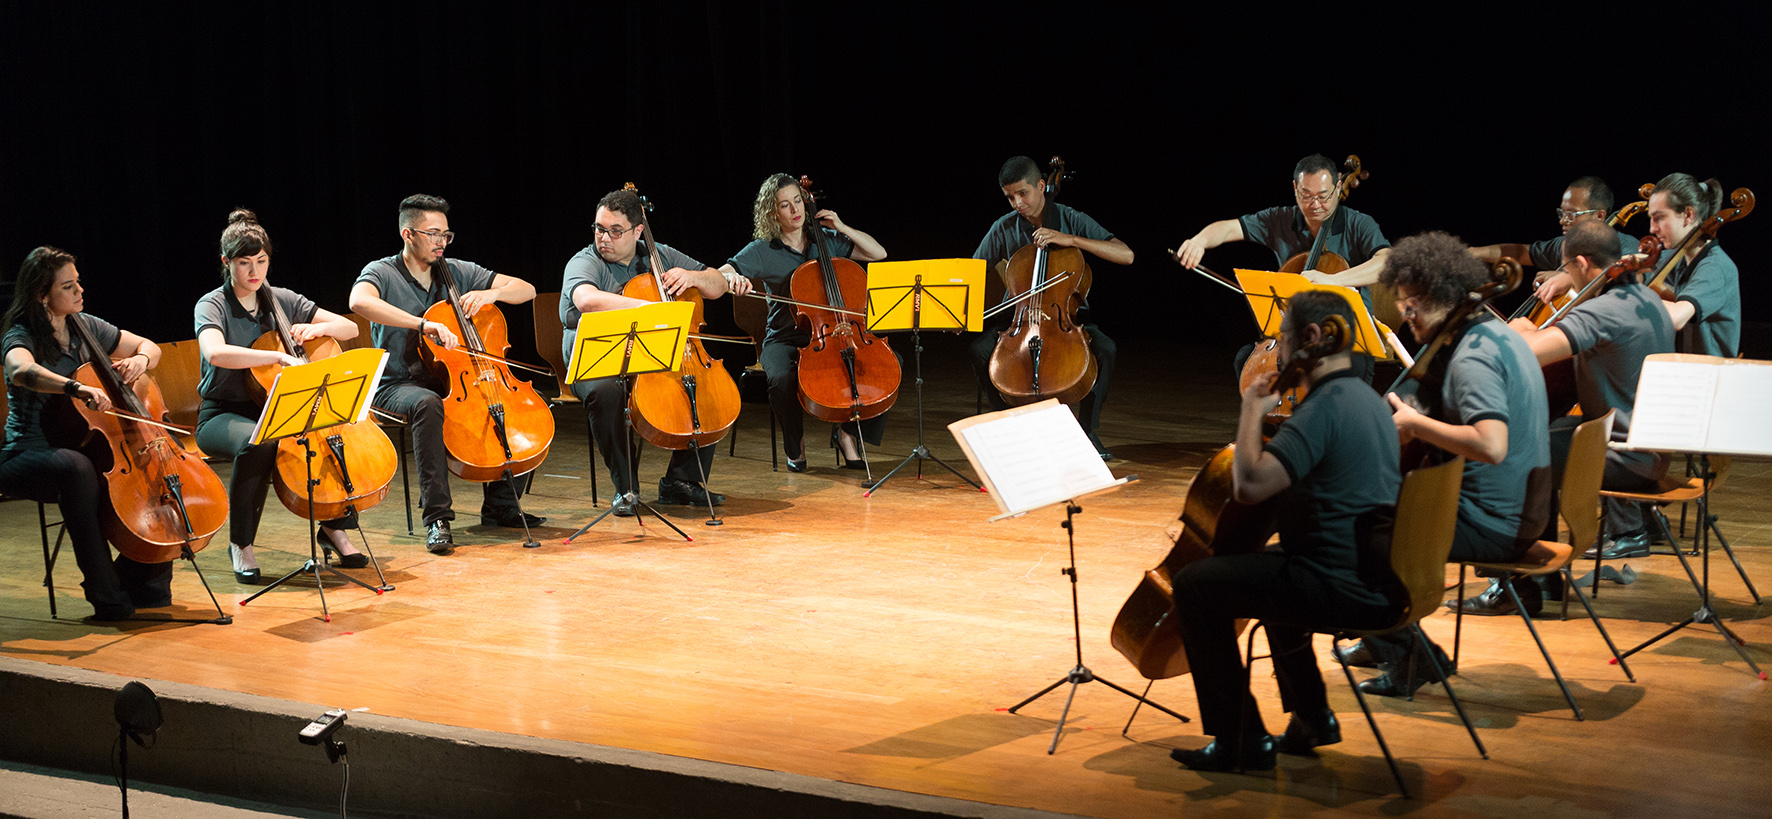 Fukuda Cello Ensemble - Ricardo Fukuda e violoncelistas em concerto - Instituto Fukuda